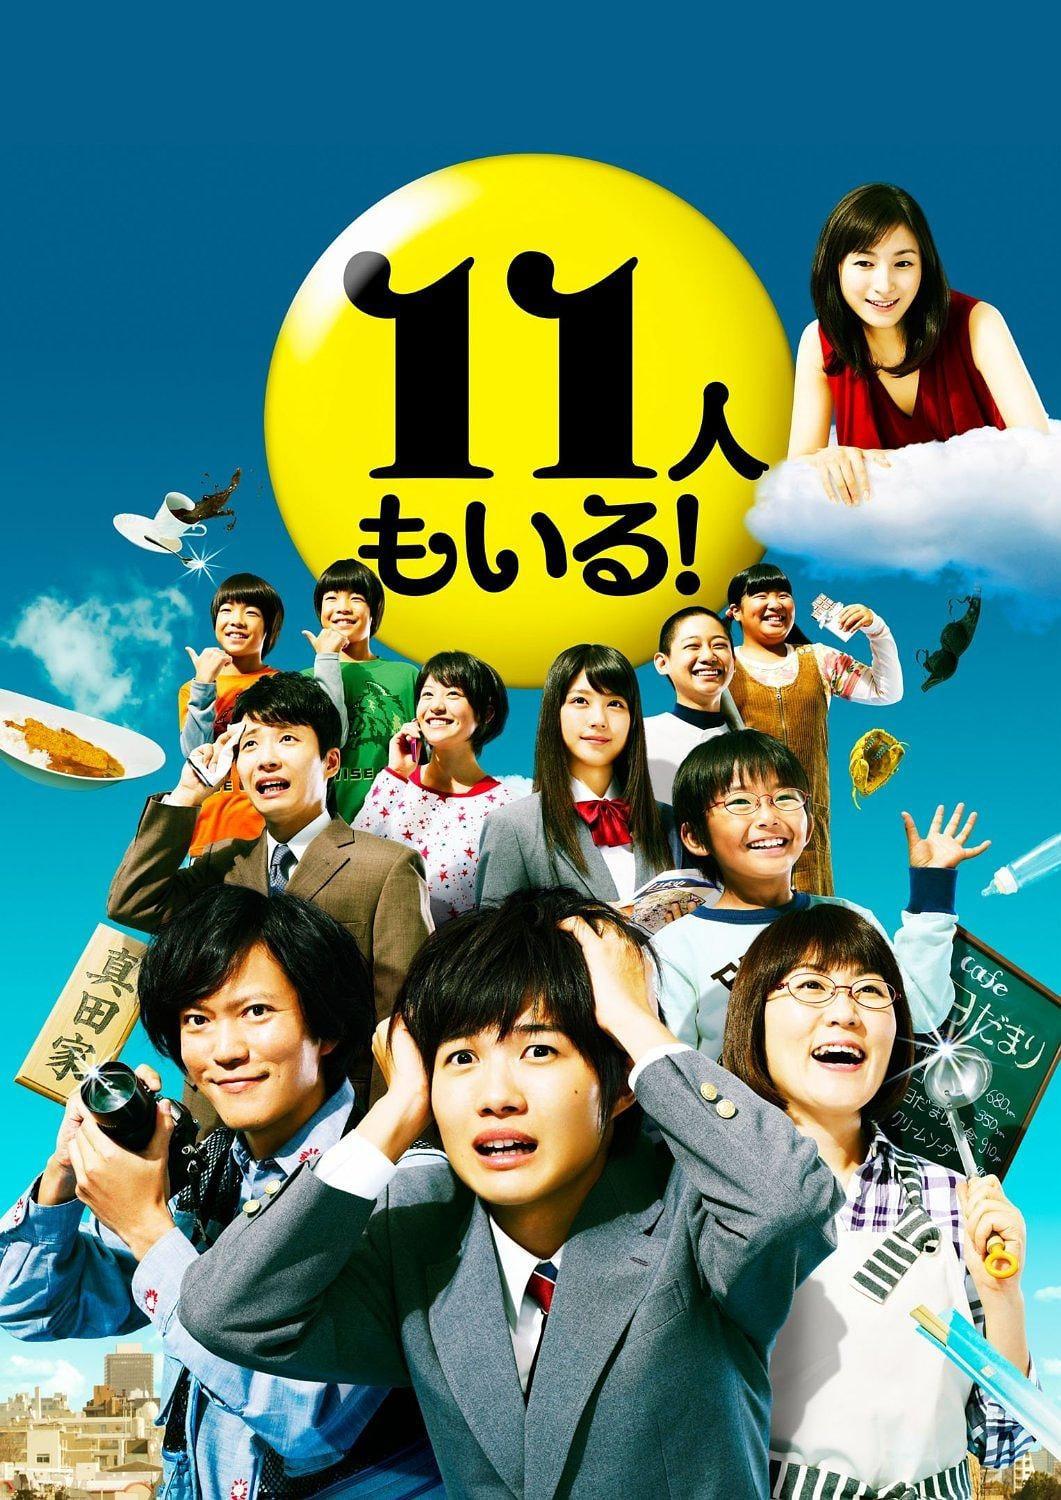 TV ratings for Odd Family 11 (11人もいる!) in Netherlands. TV Asahi TV series